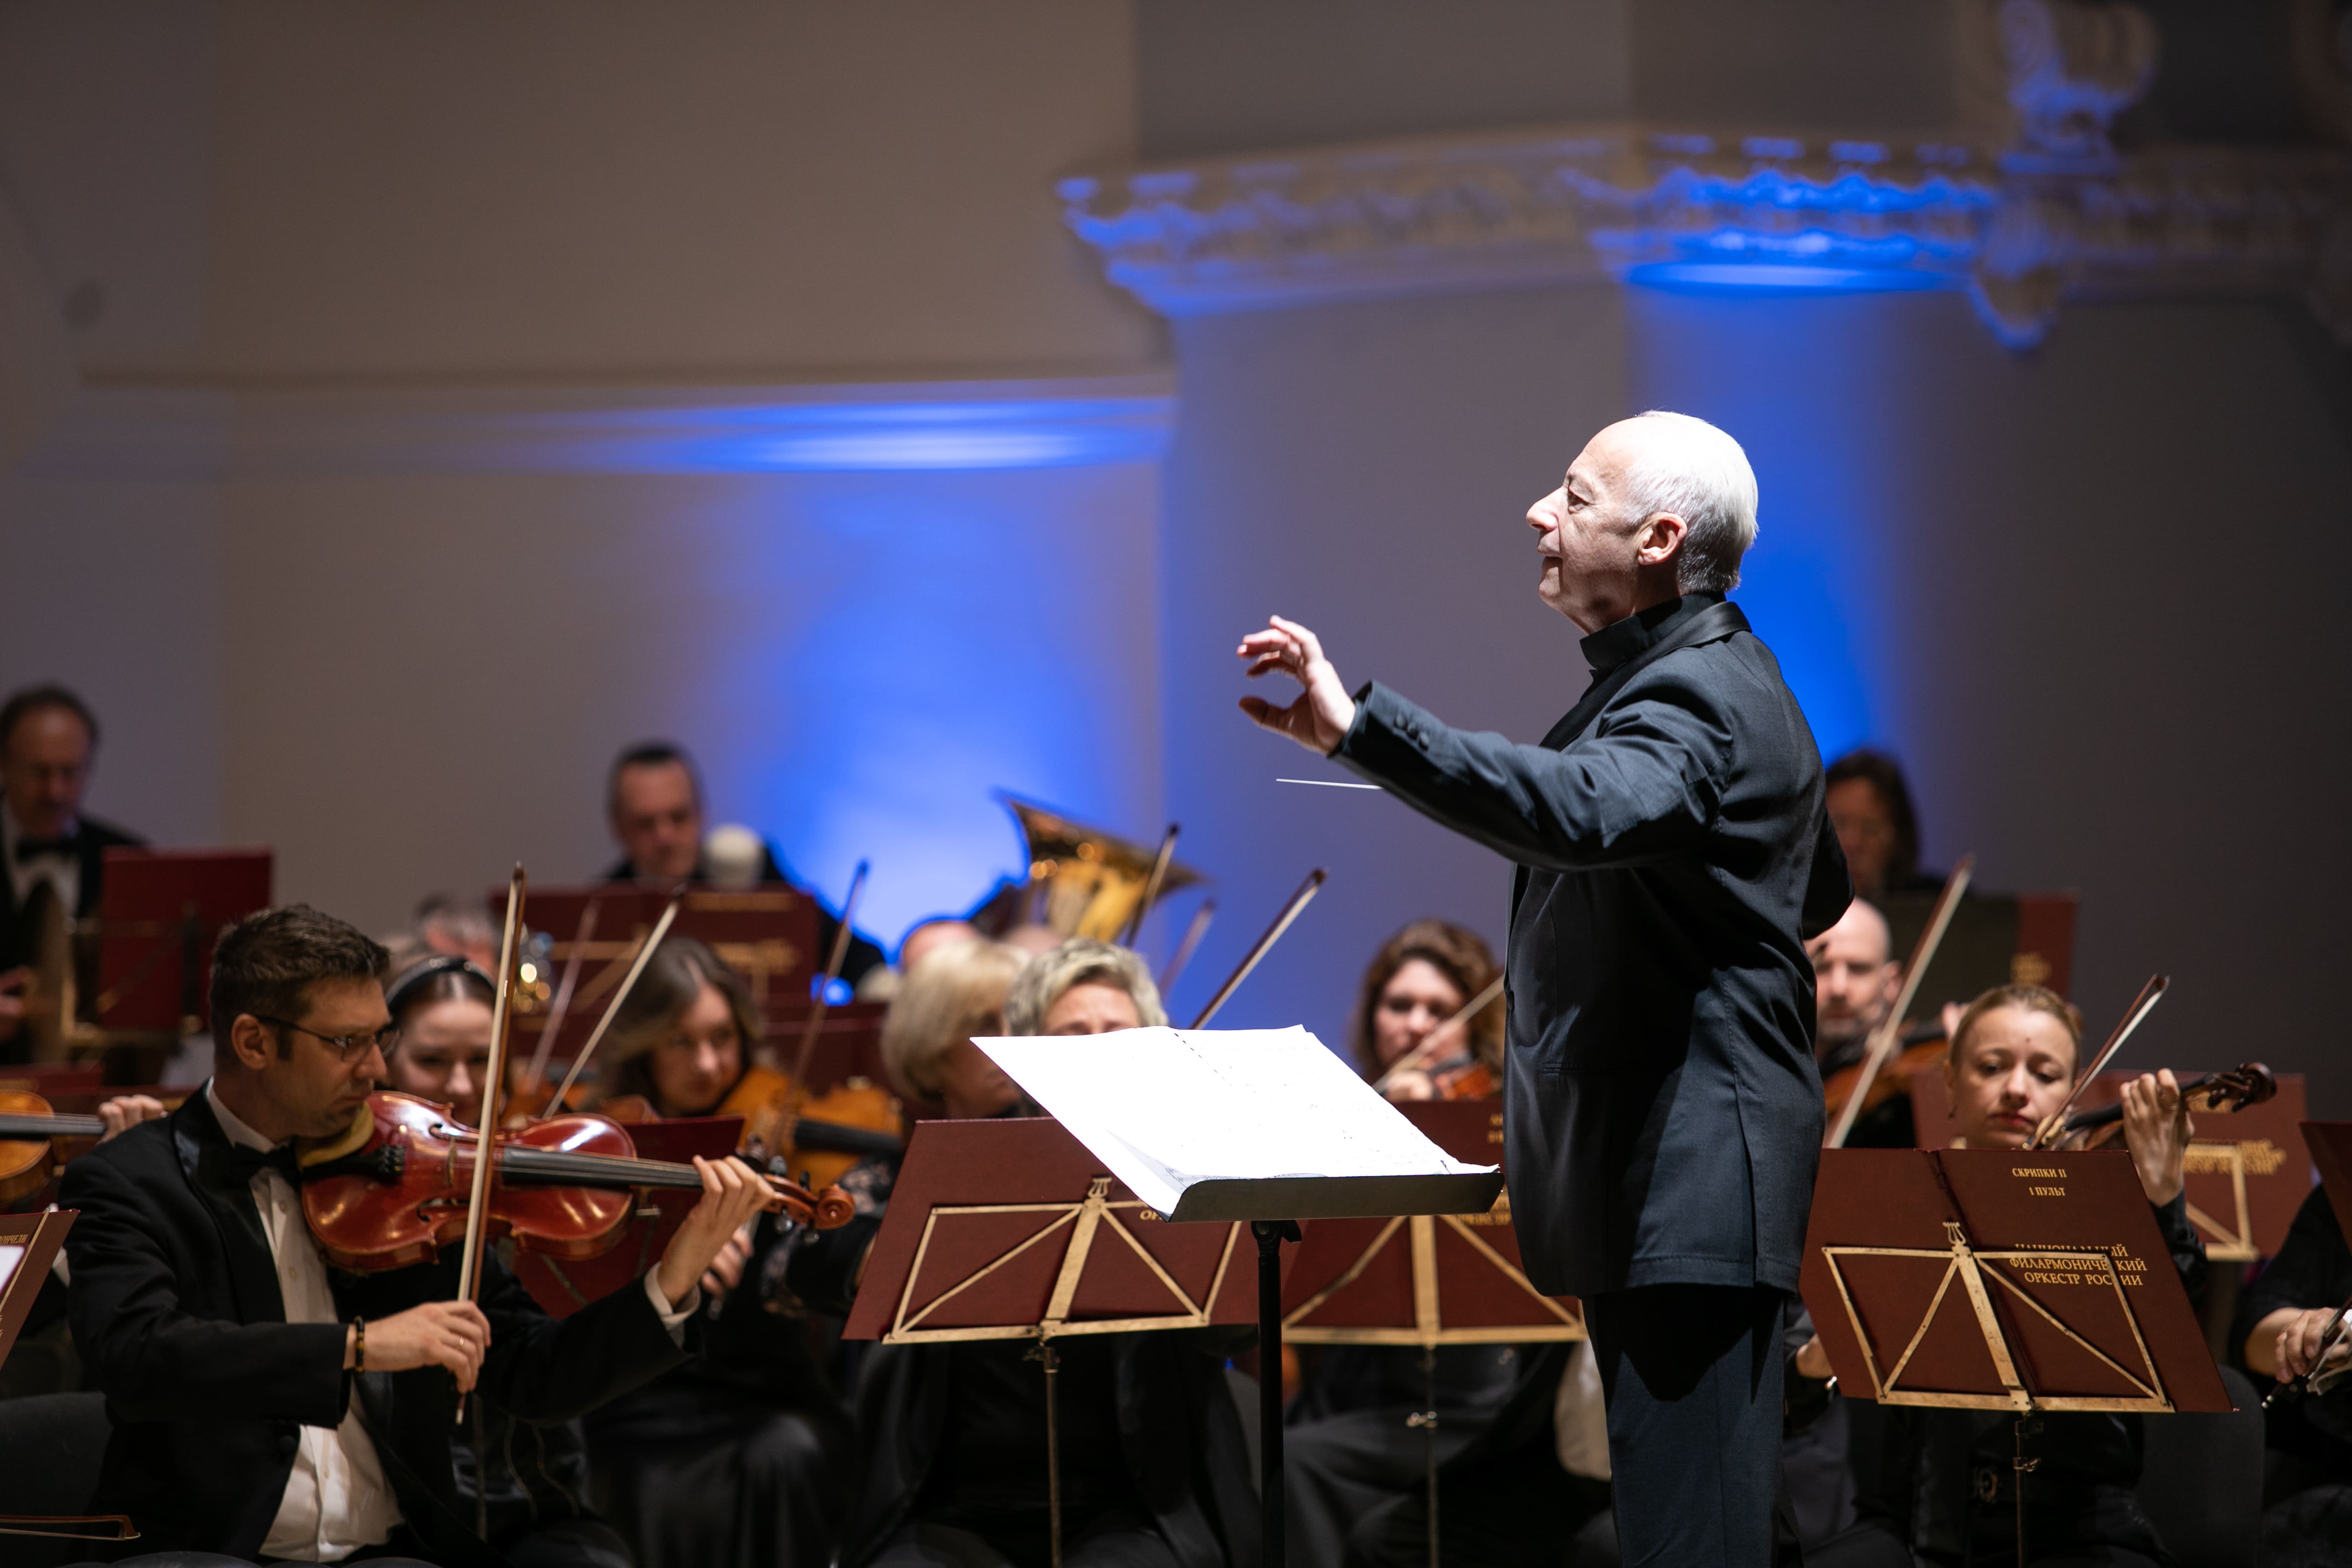 Национальный филармонический оркестр России и Владимир Спиваков передадут гонорар за концерты в Оренбурге на помощь пострадавшим от паводка 